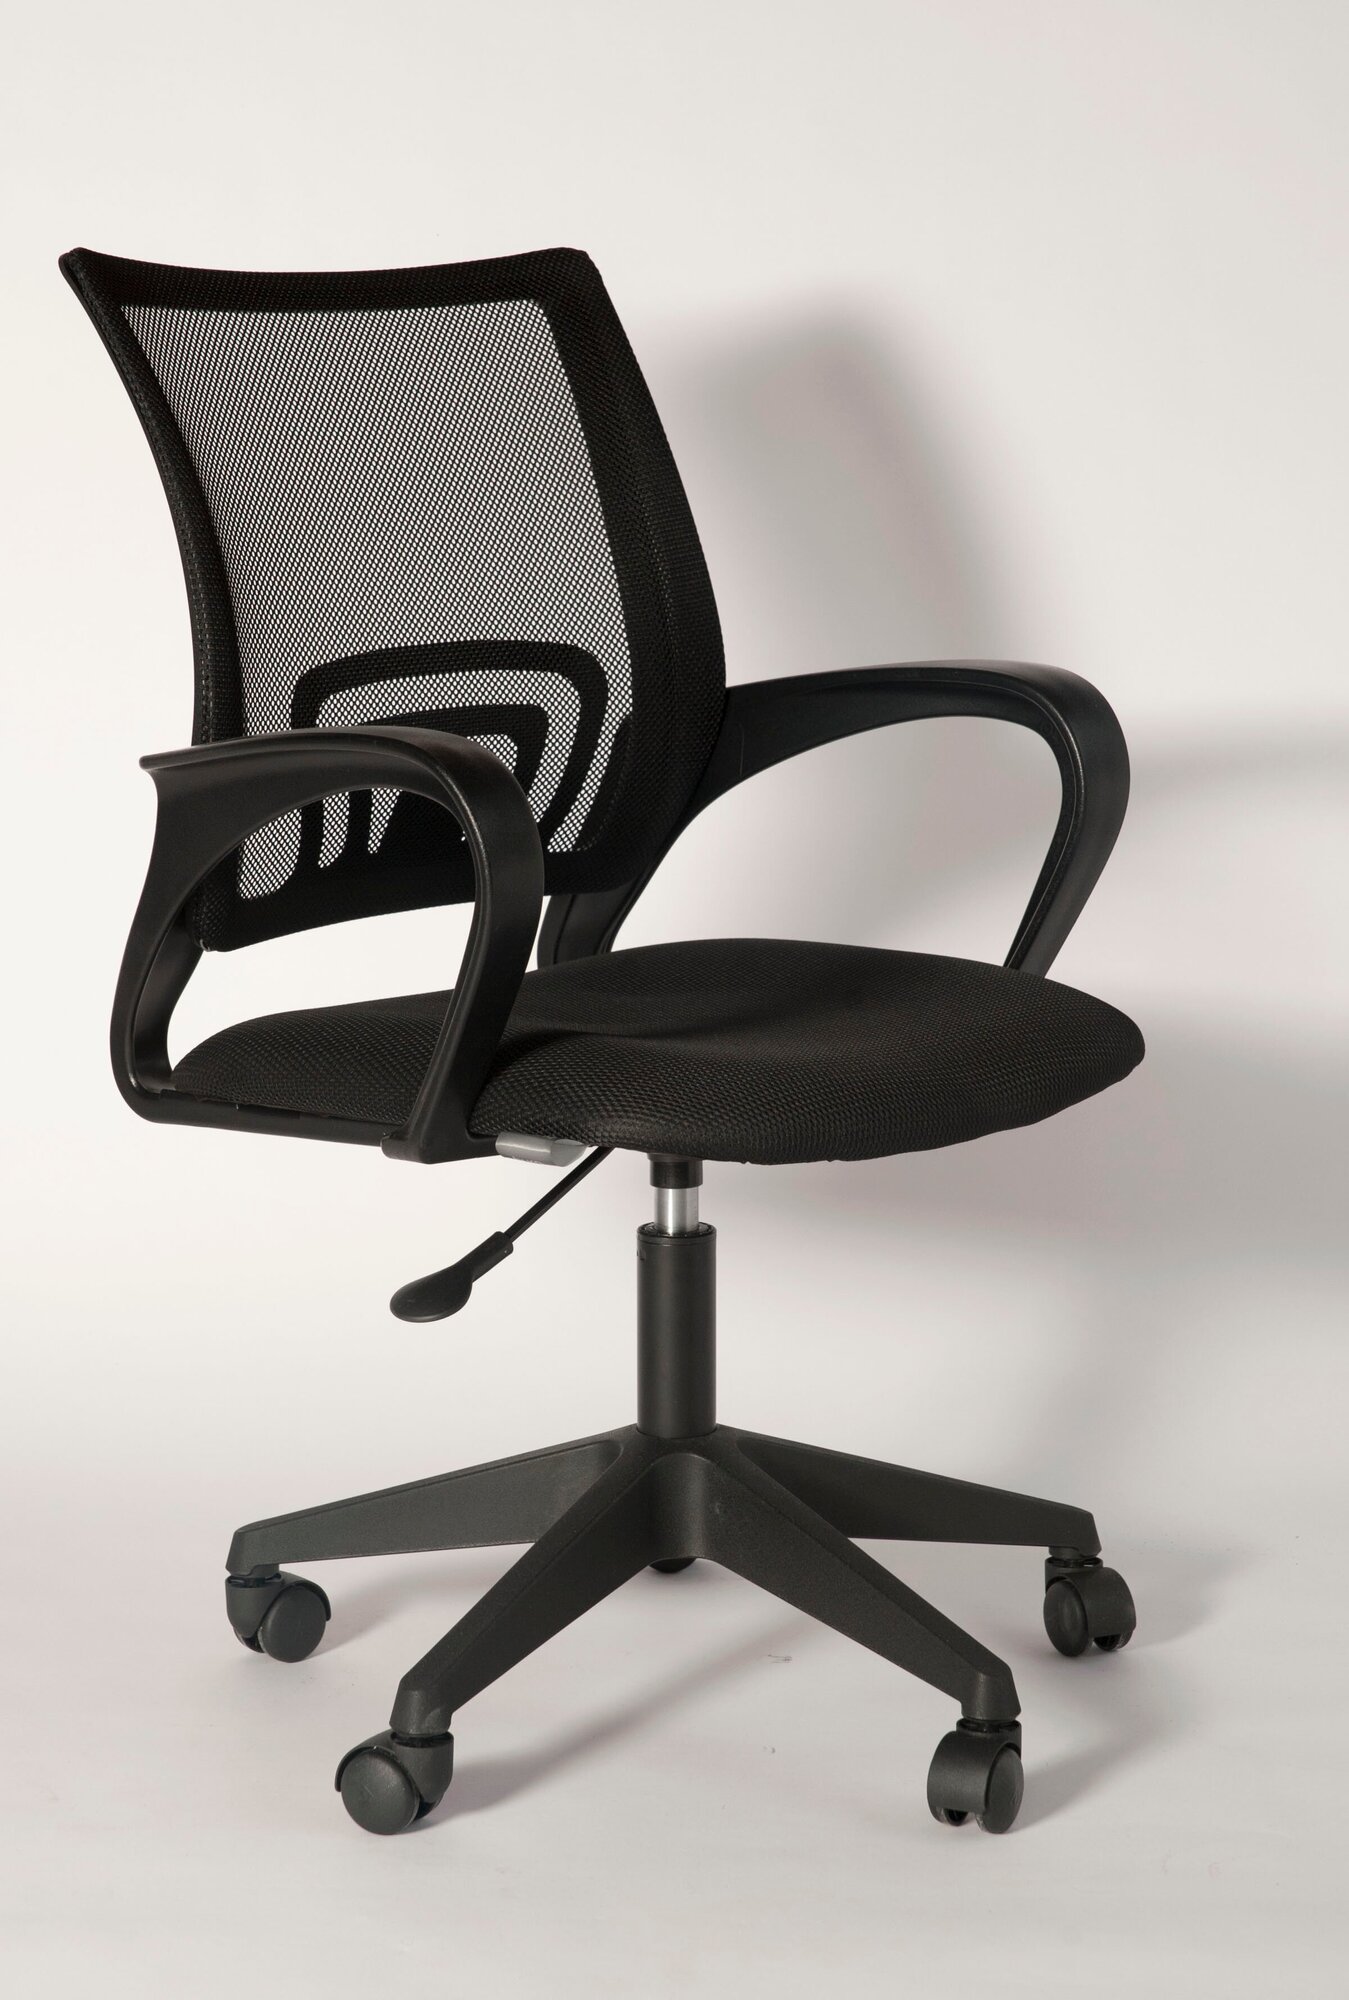 Кресло компьютерное офисное стул на колесиках Hesby Chair 2 черное сетка